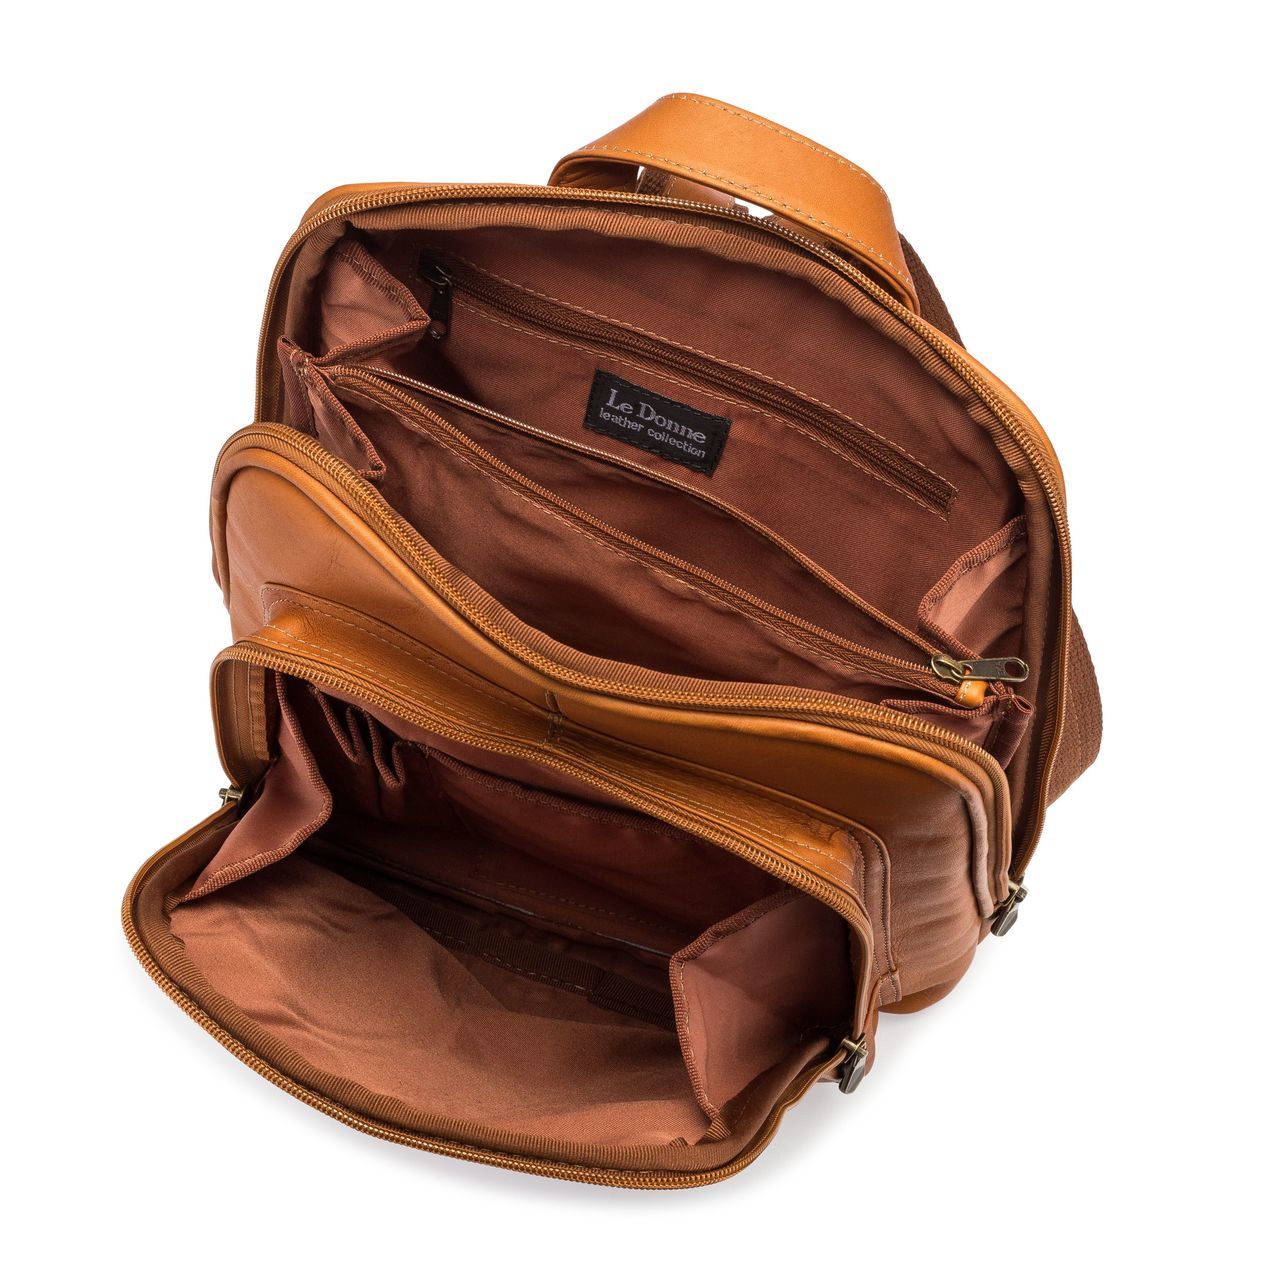 Le Donne Leather Nokota Backpack LD-8064 - image 2 of 4